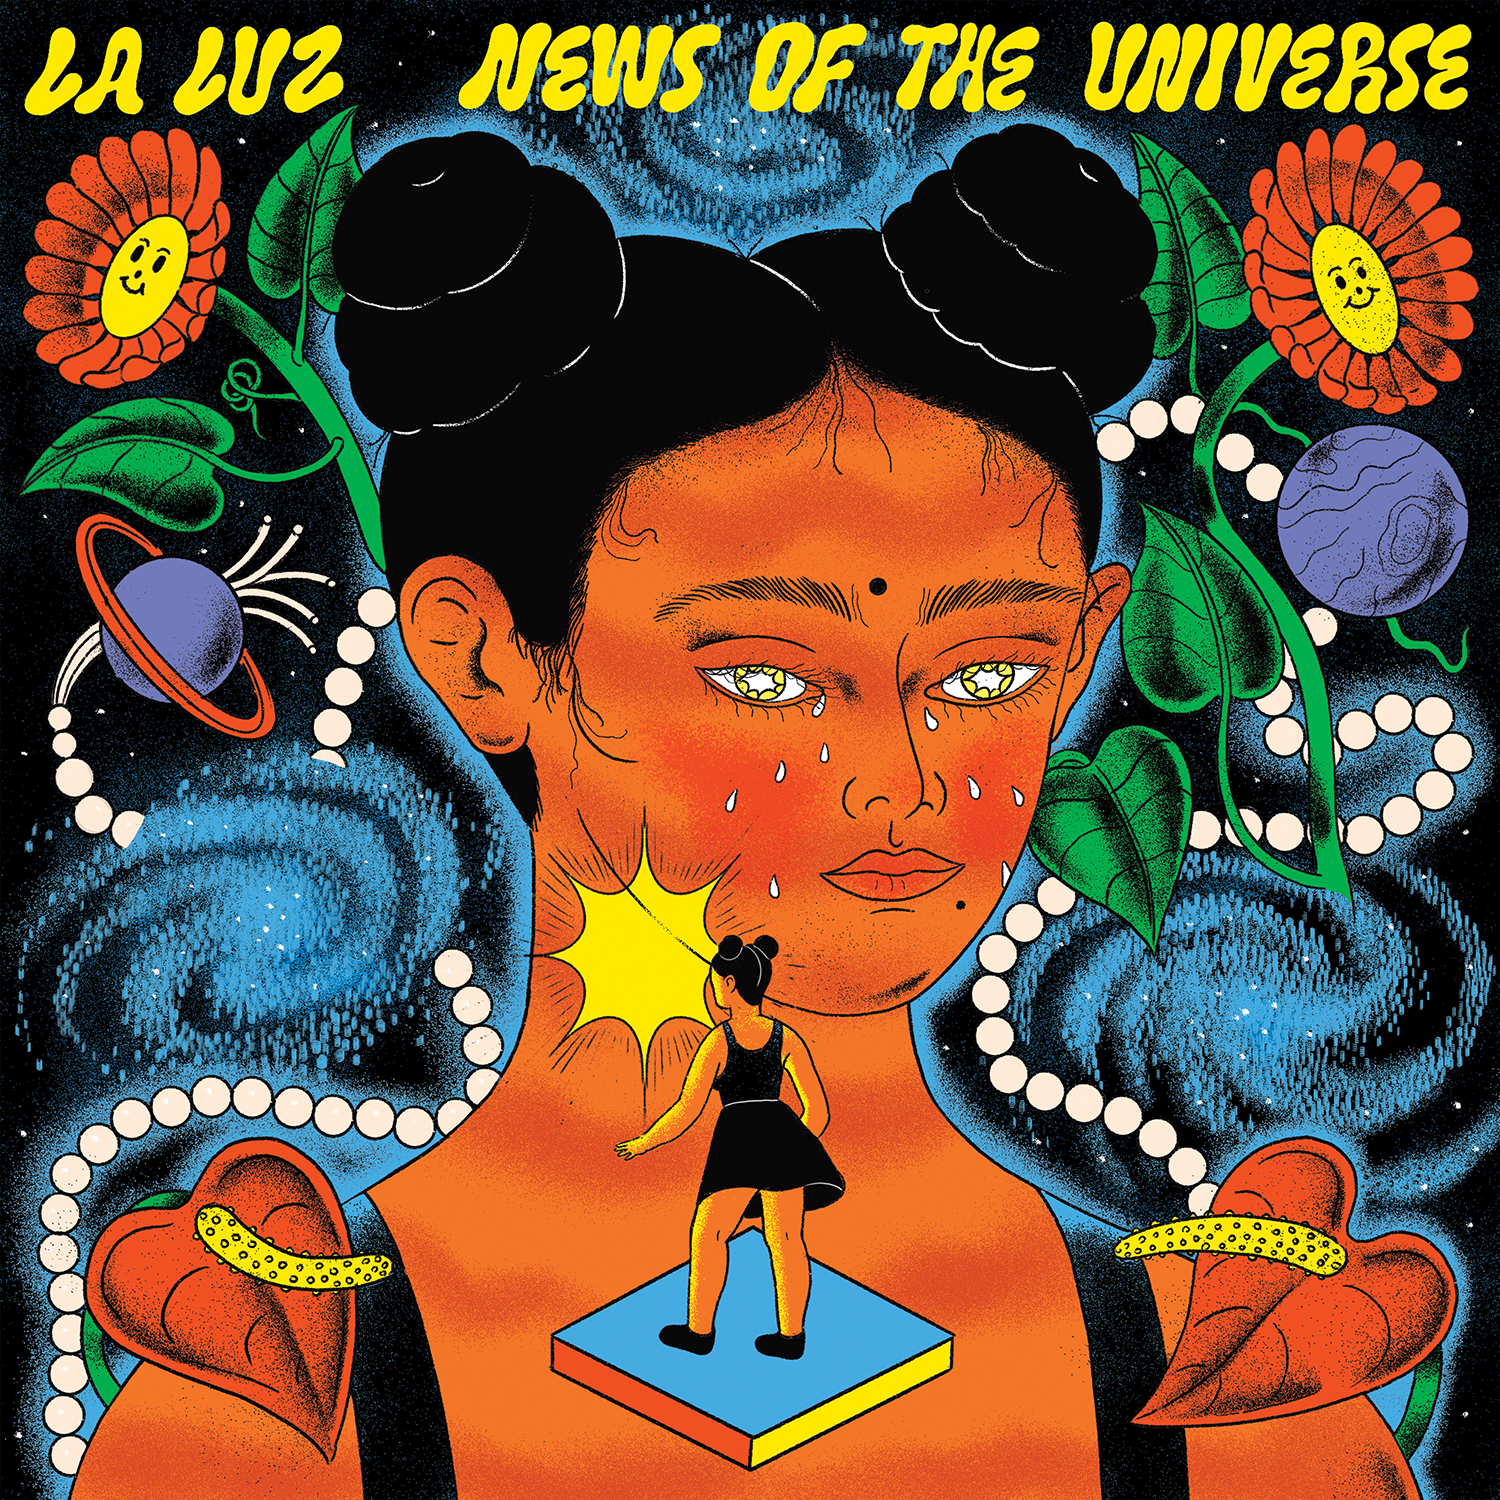 LA LUZ - NEWS OF THE UNIVERSE